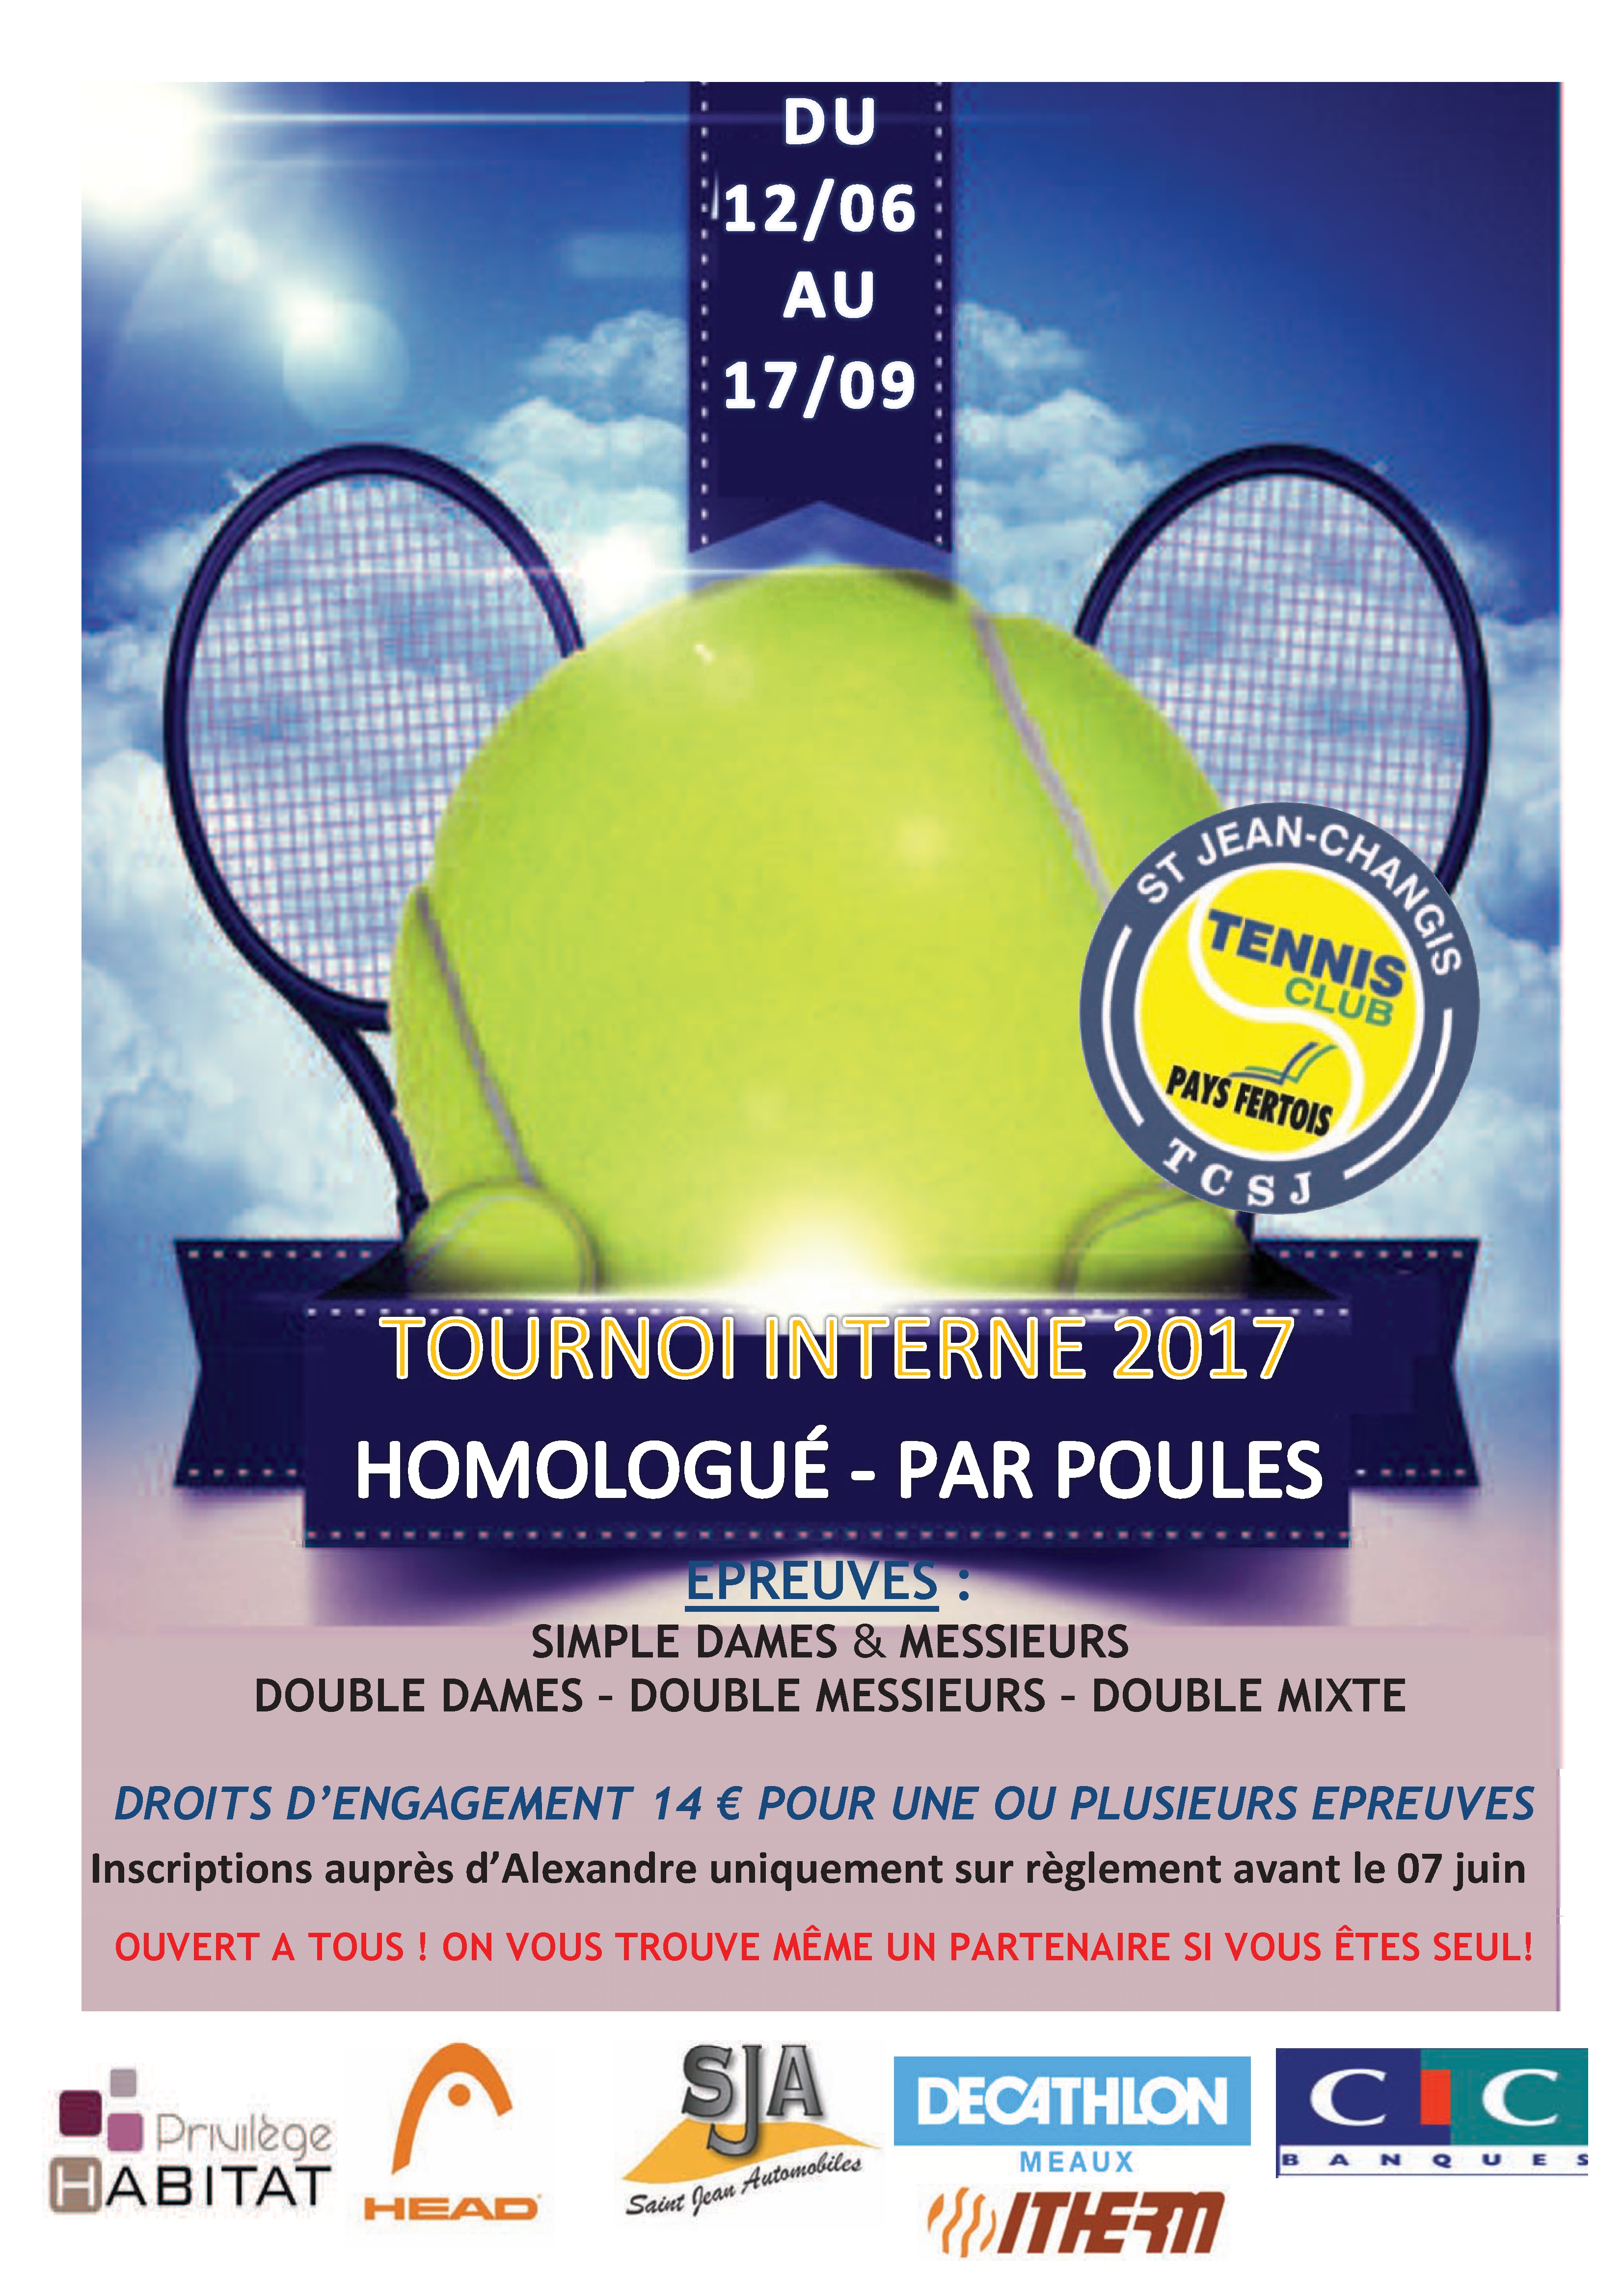 Tournoi Interne homologué du 12/06/2017 au 17/09/2017